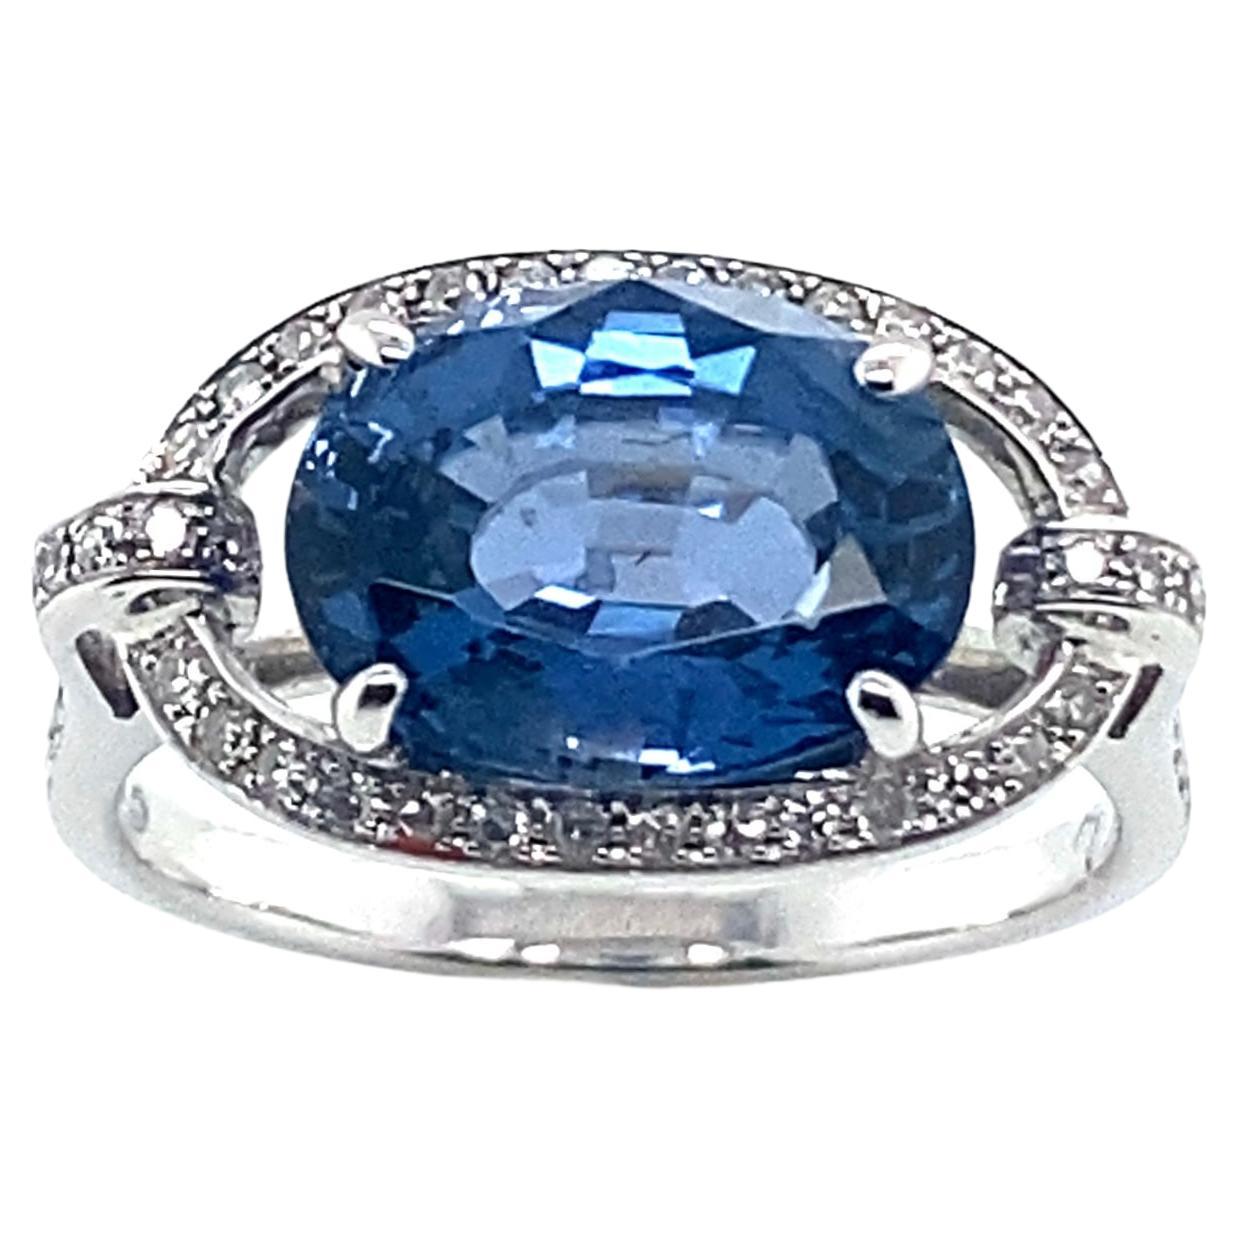 18 Karat Weißgold Ring mit blauem Spinell, umgeben von Diamanten